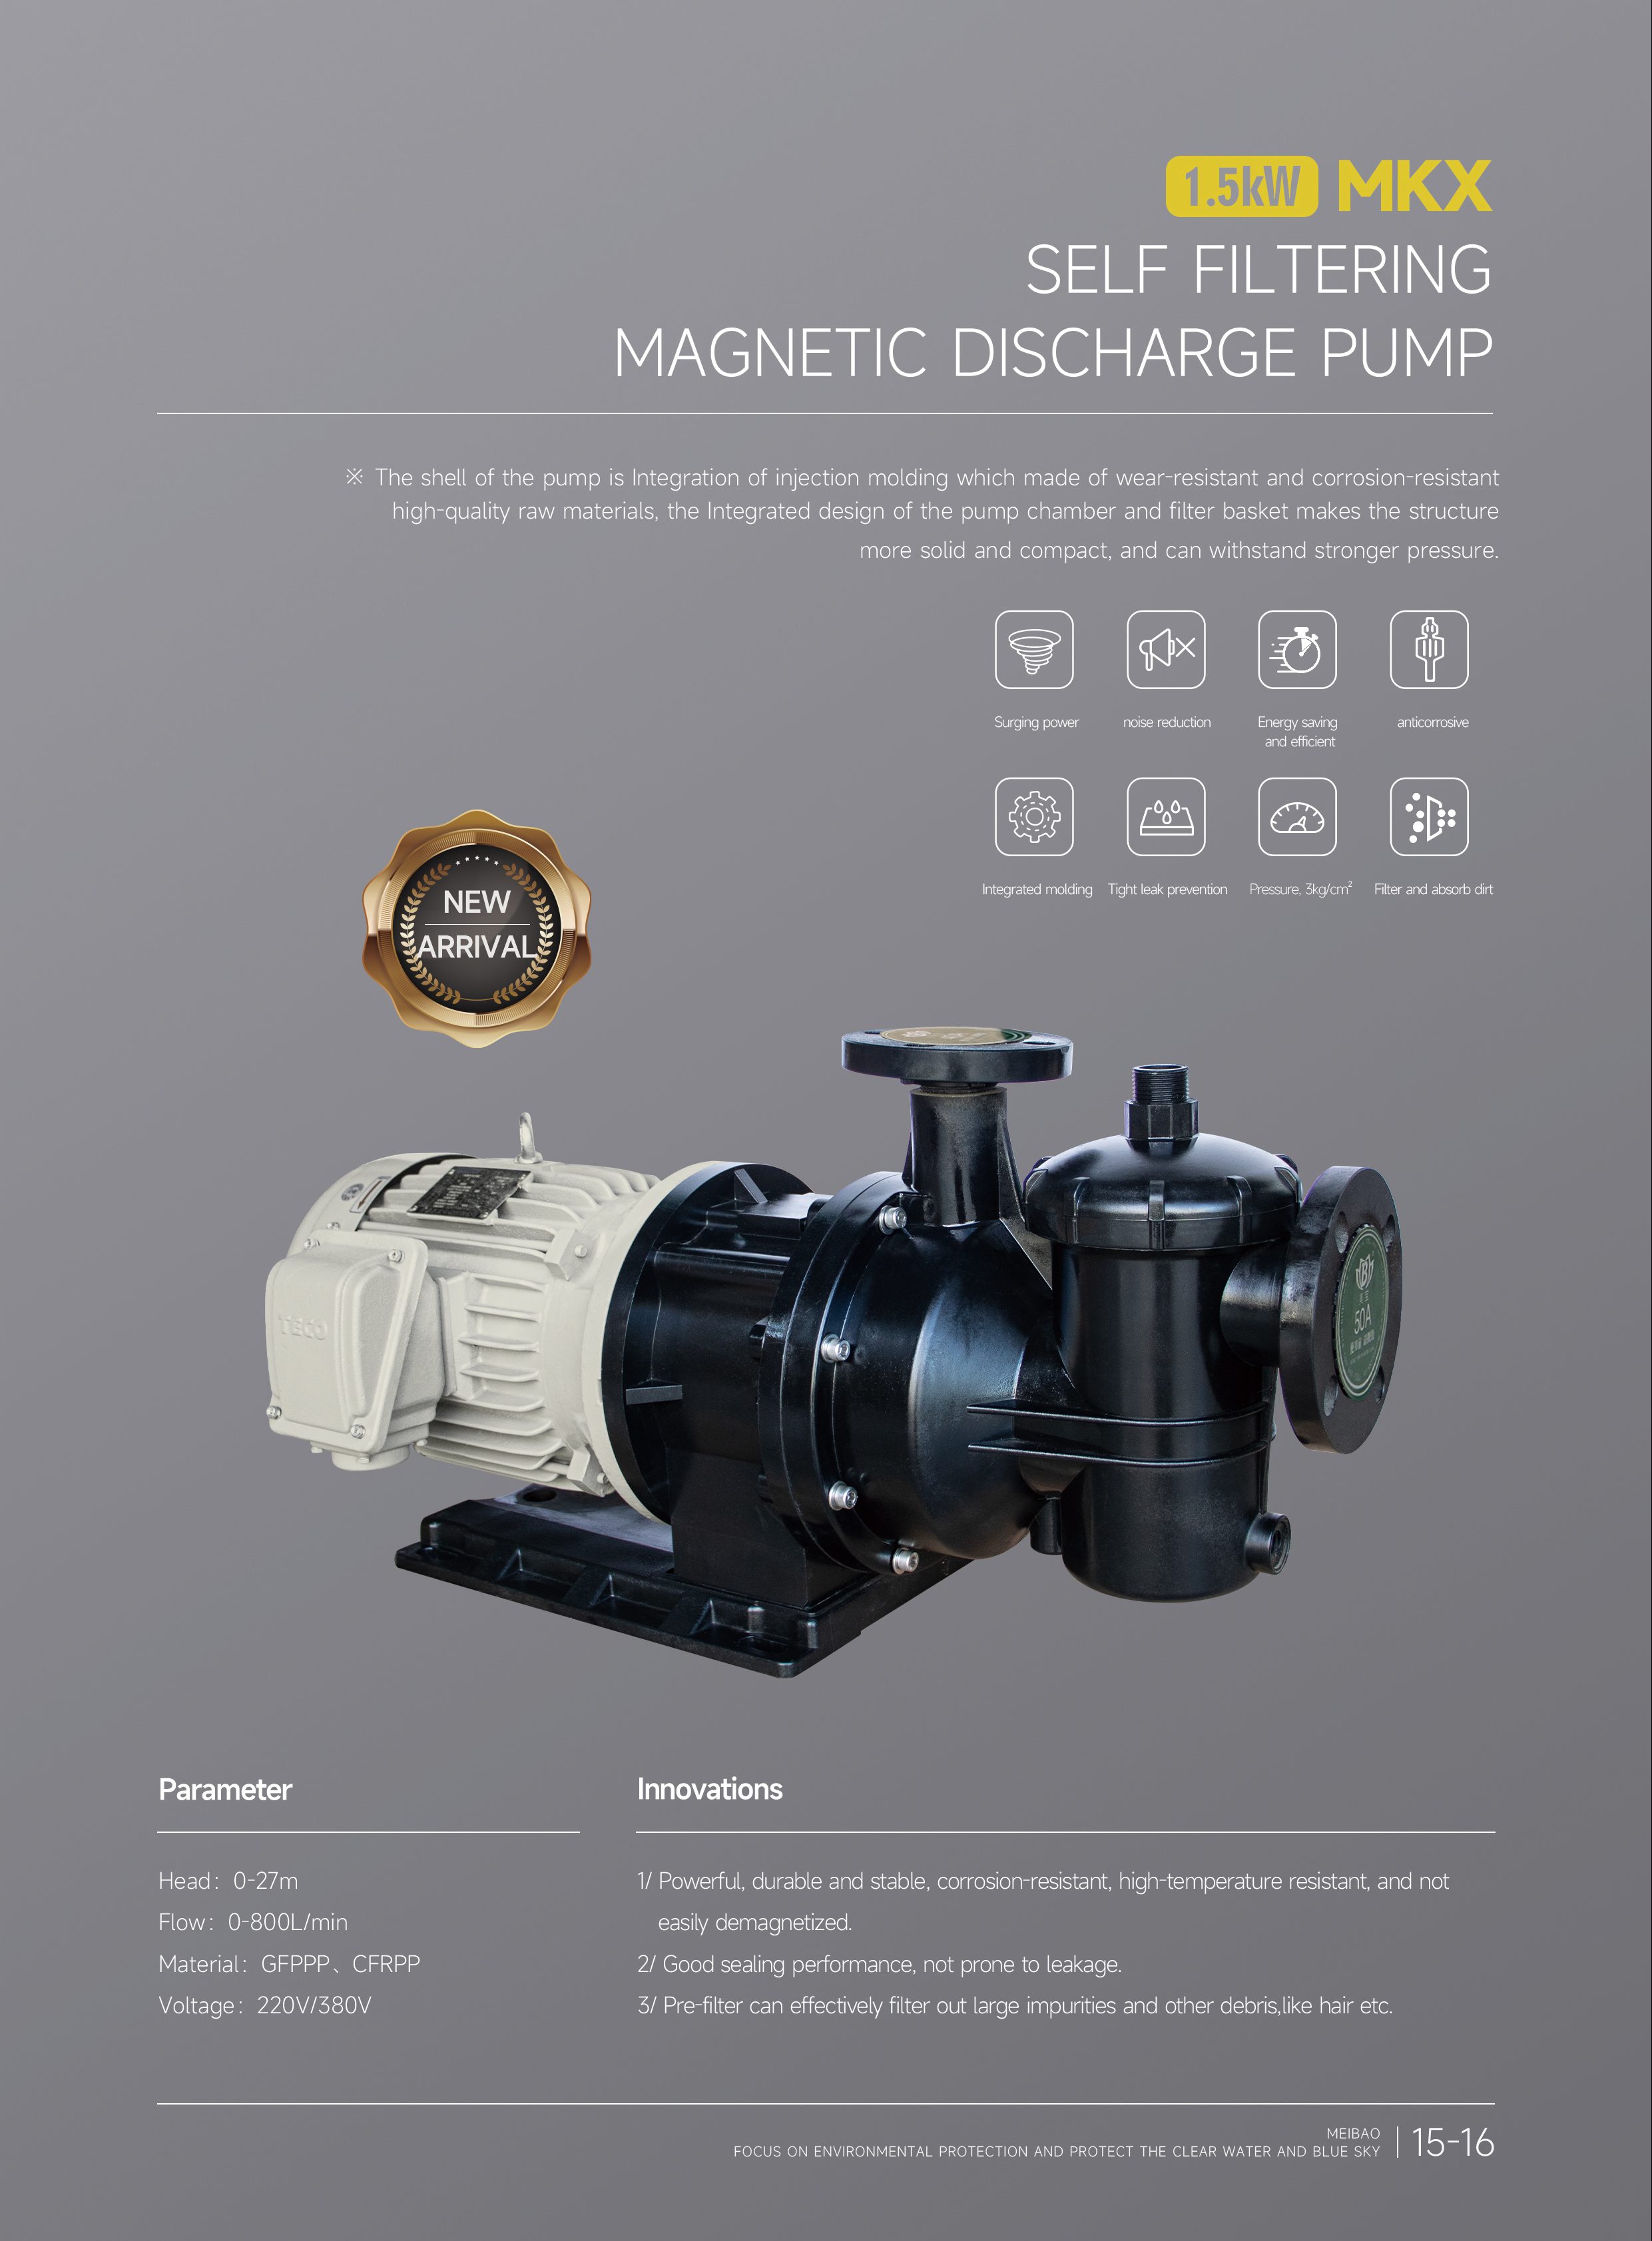 self filteing magnetic discharge pump(自过滤磁力泵).jpg